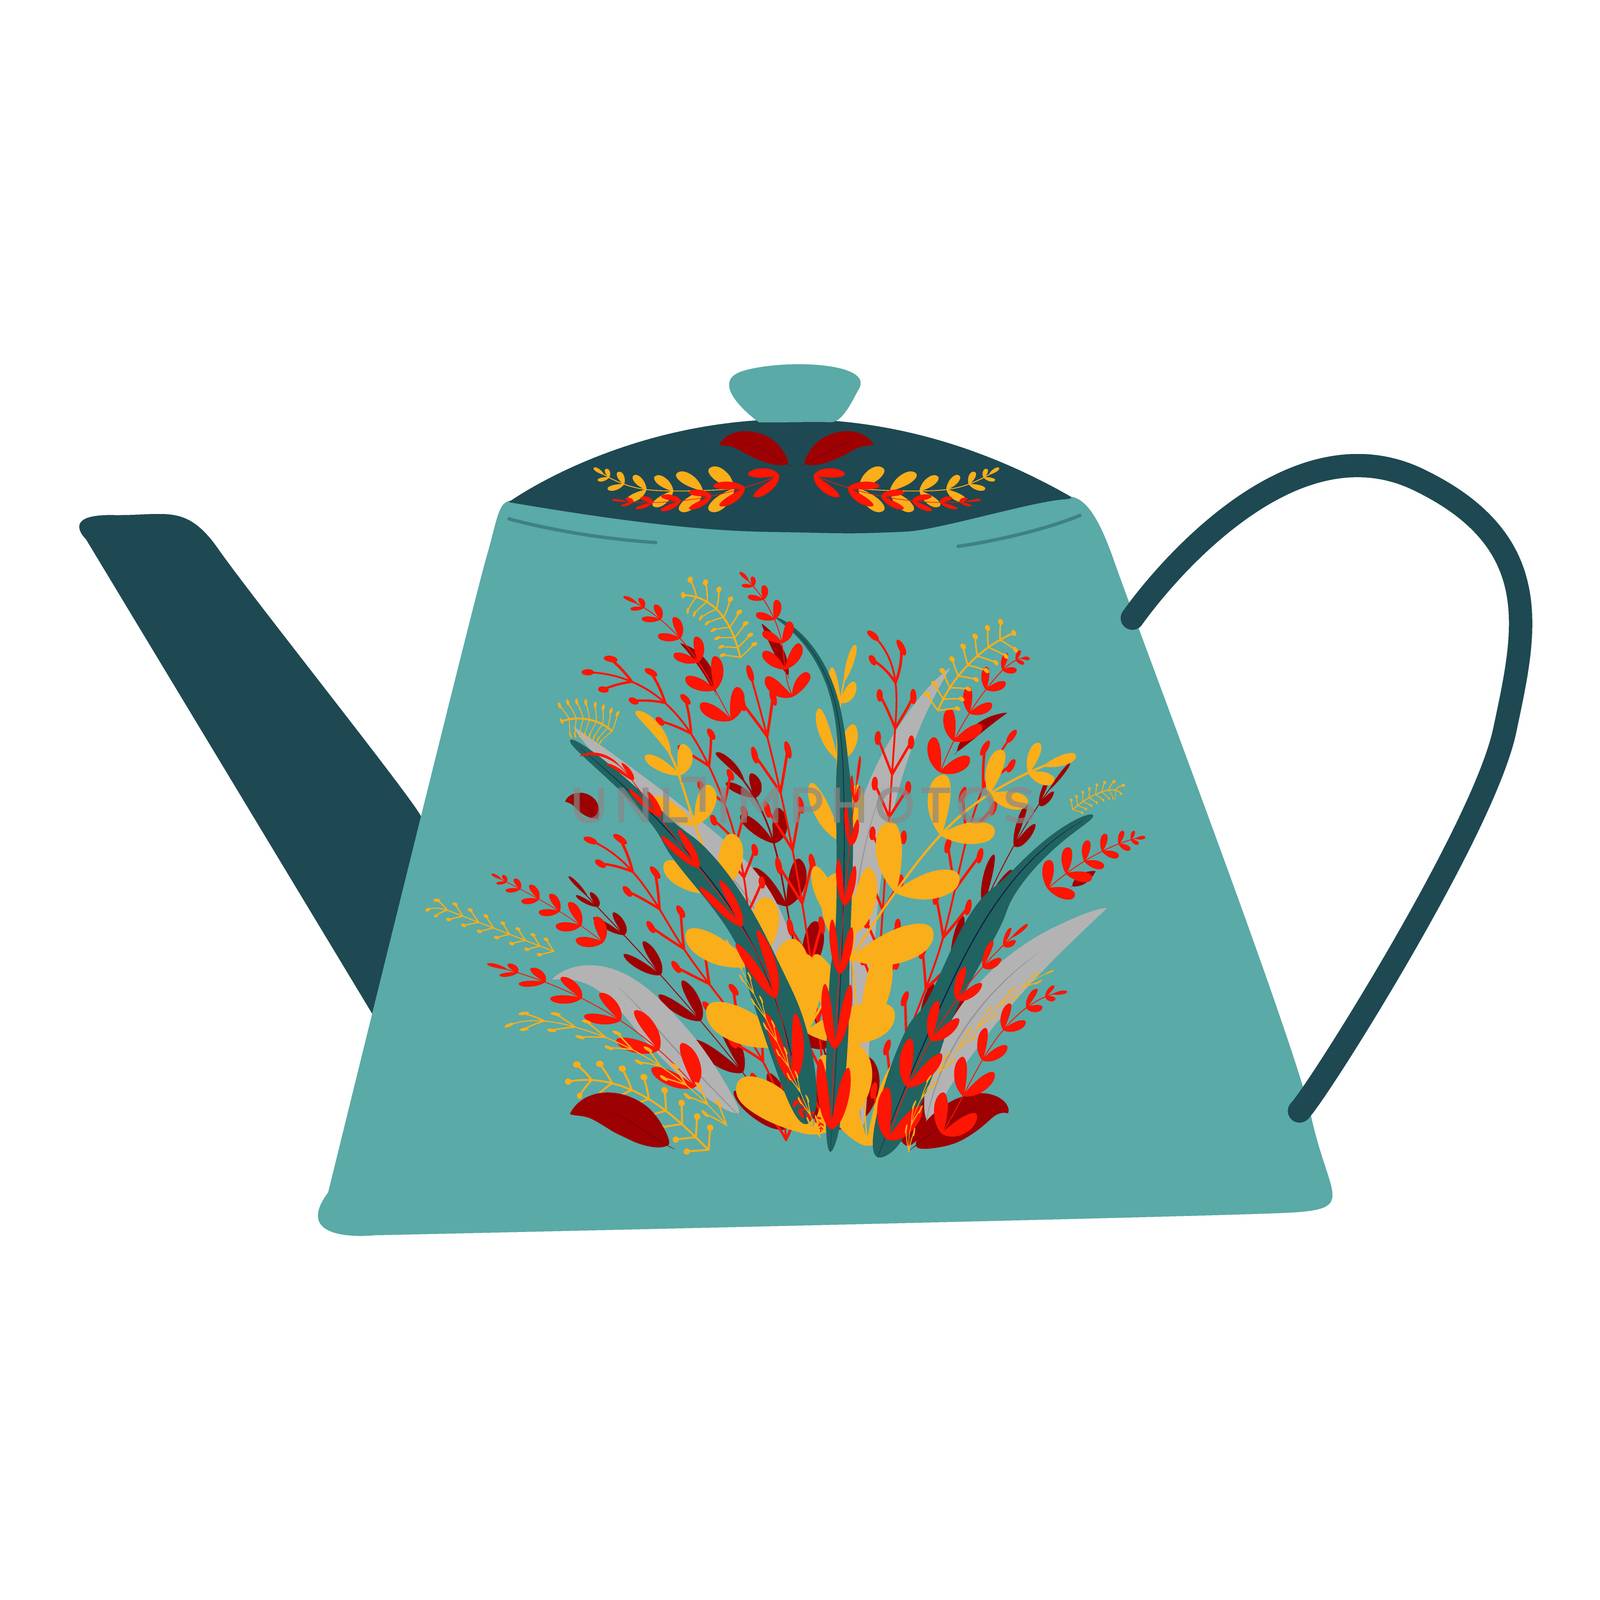 Retro turquoise tea pot with autumn leaves decor by Nata_Prando